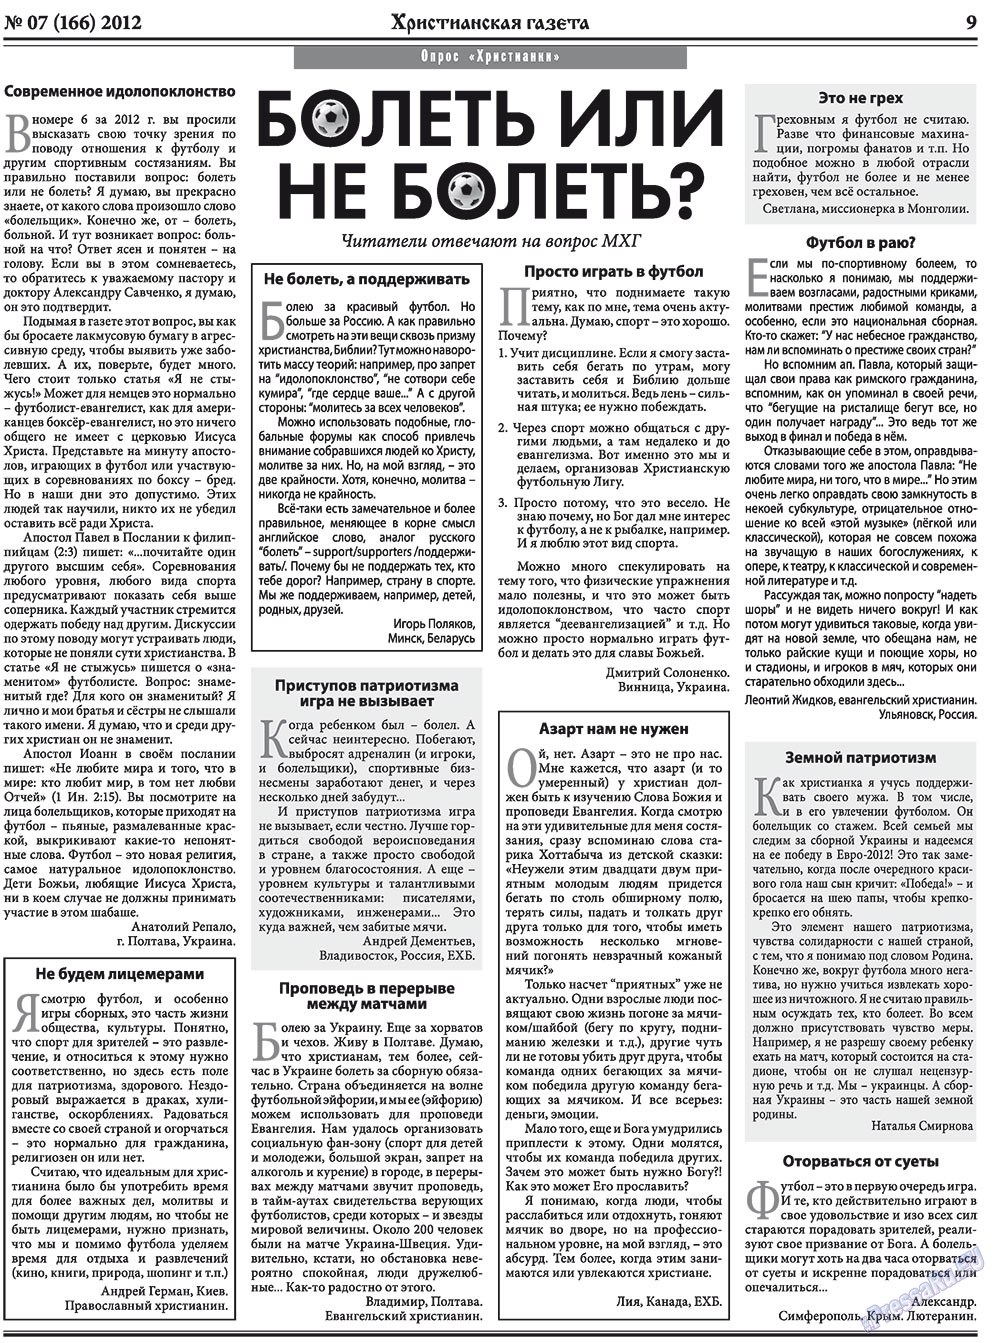 Христианская газета, газета. 2012 №7 стр.9